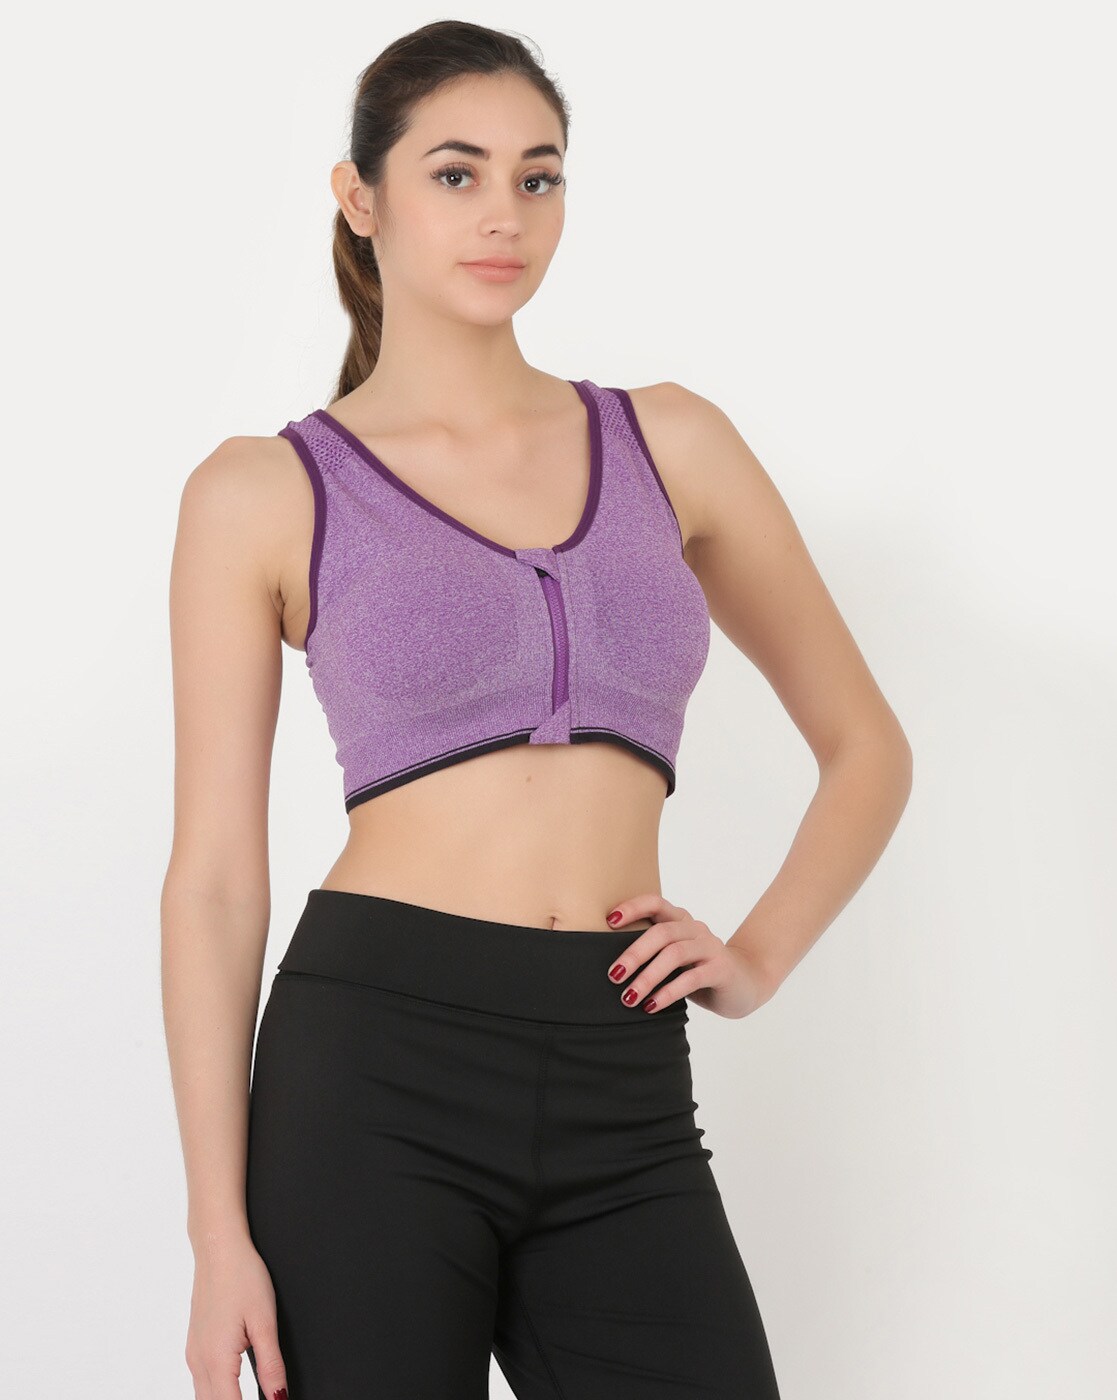 Buy Purple Bras for Women by EVERDION Online